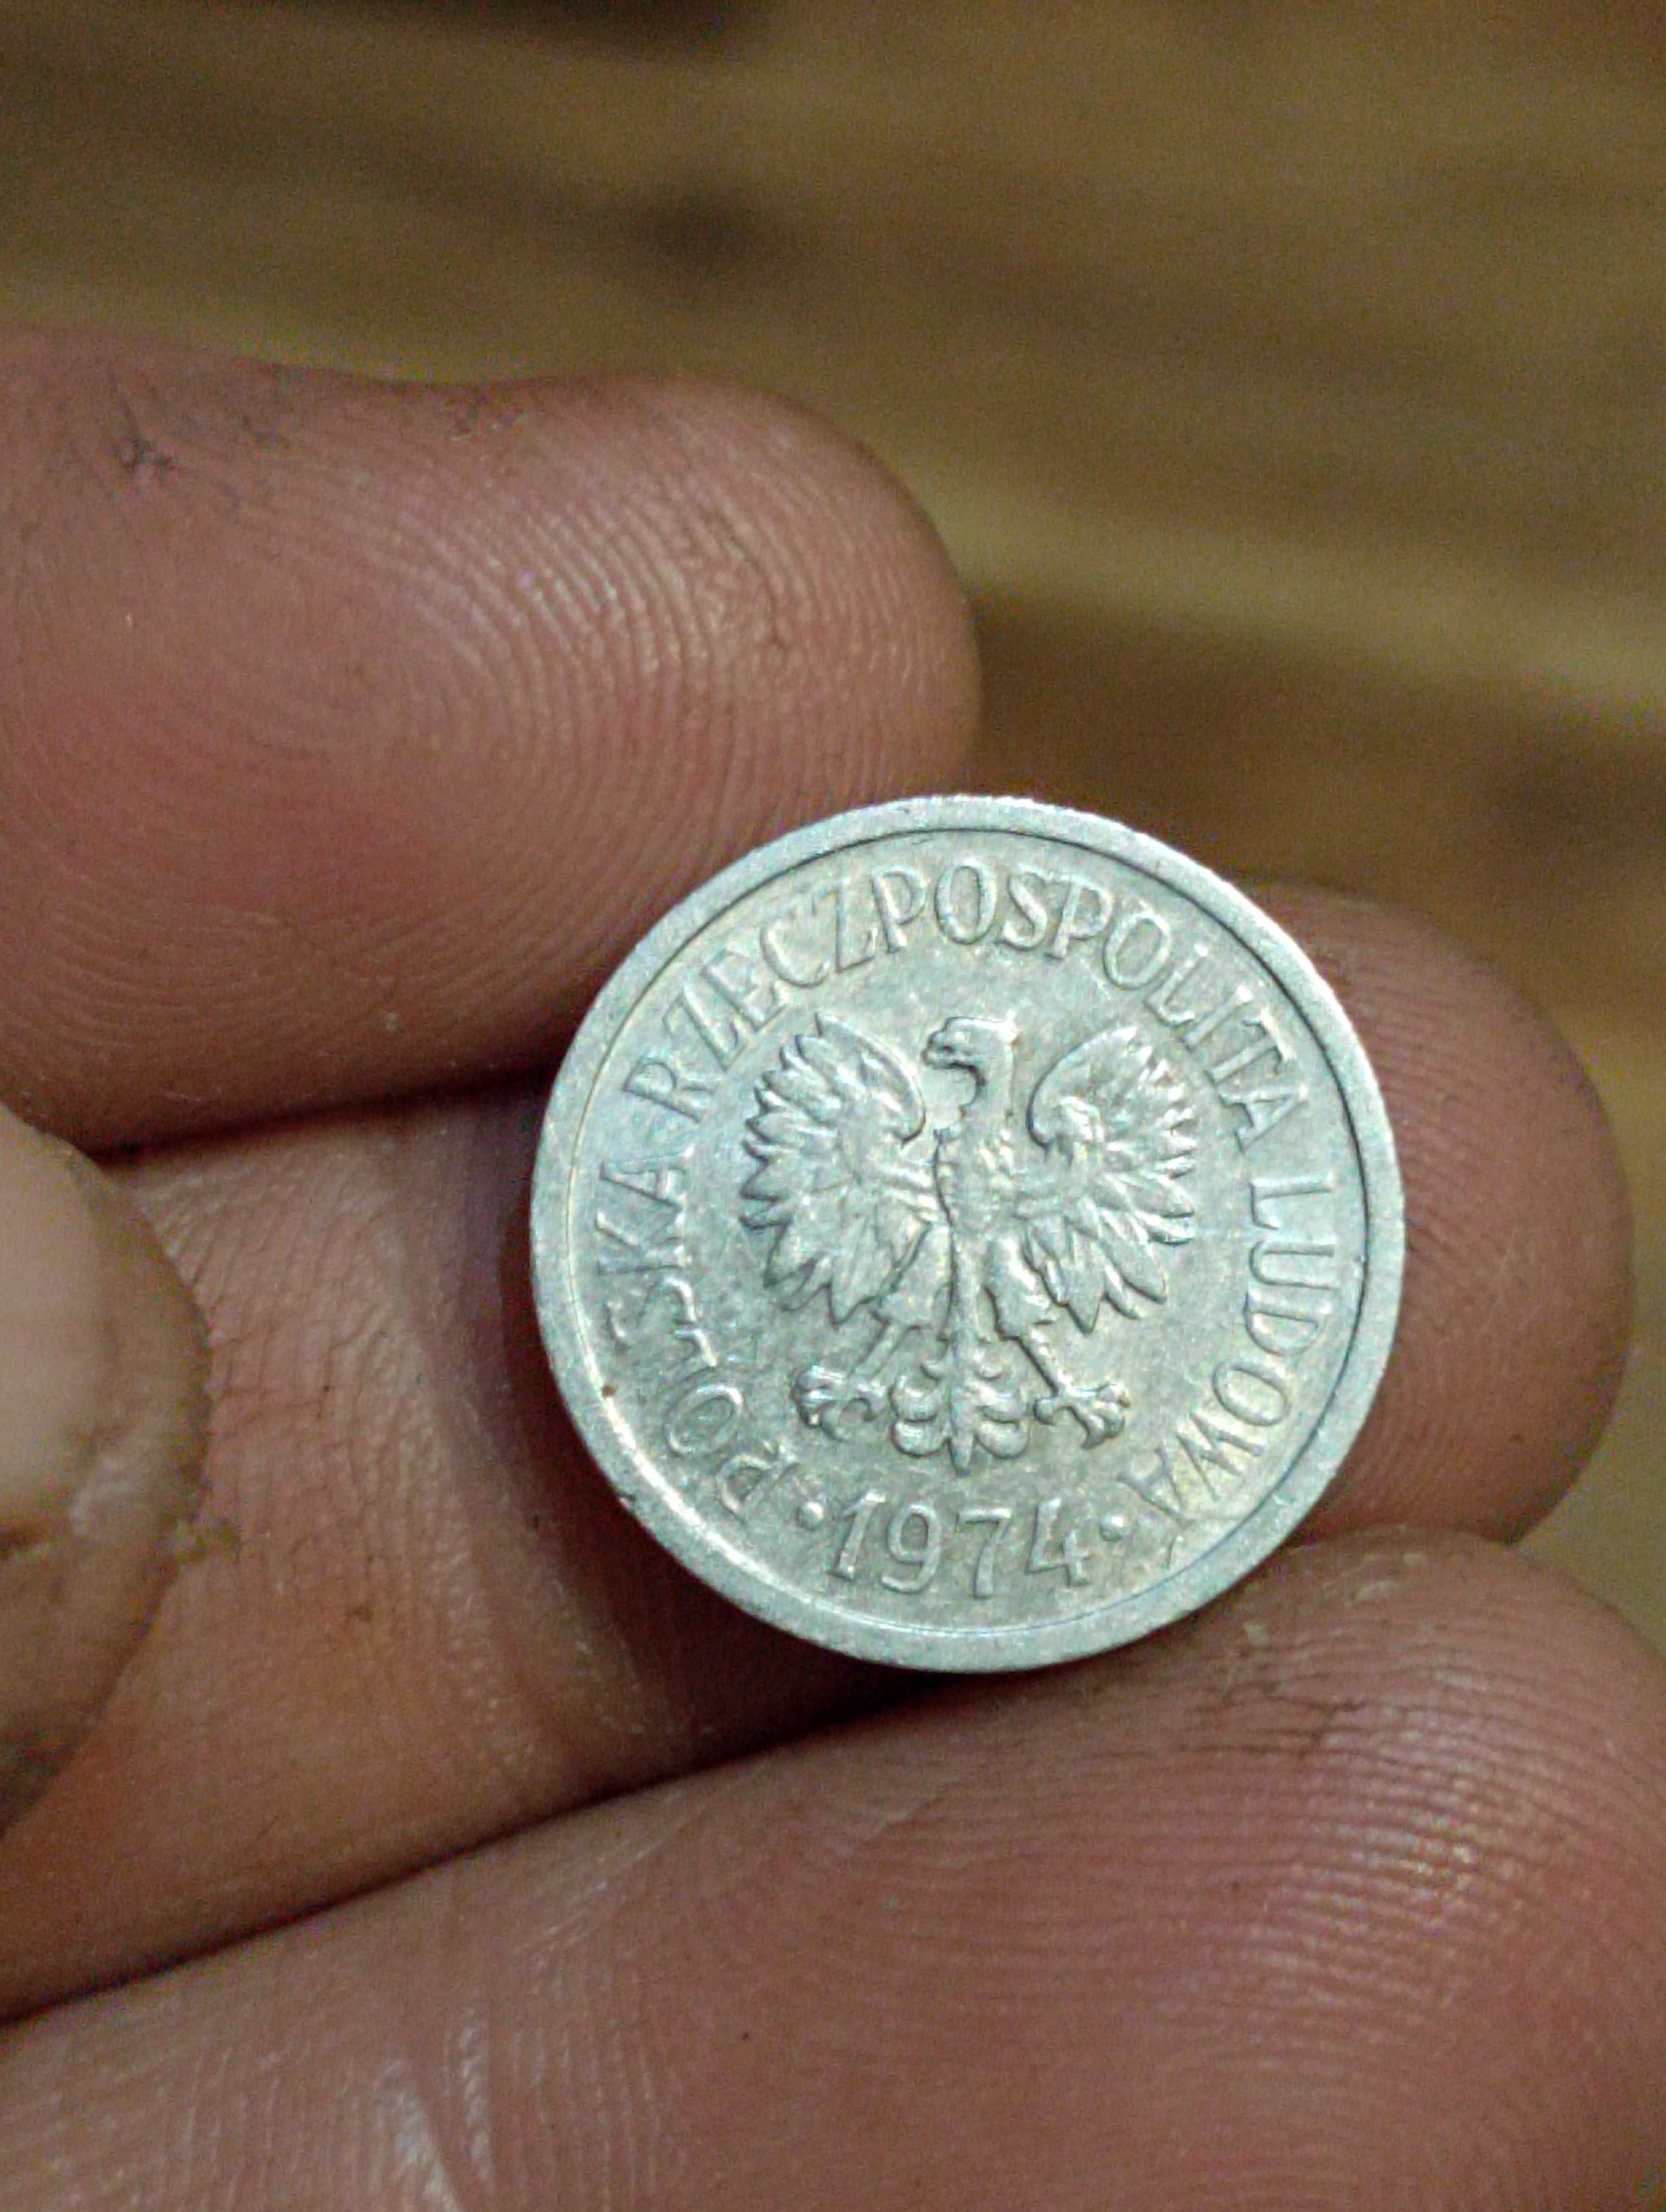 Moneta 10 groszy 1974 rok bzm